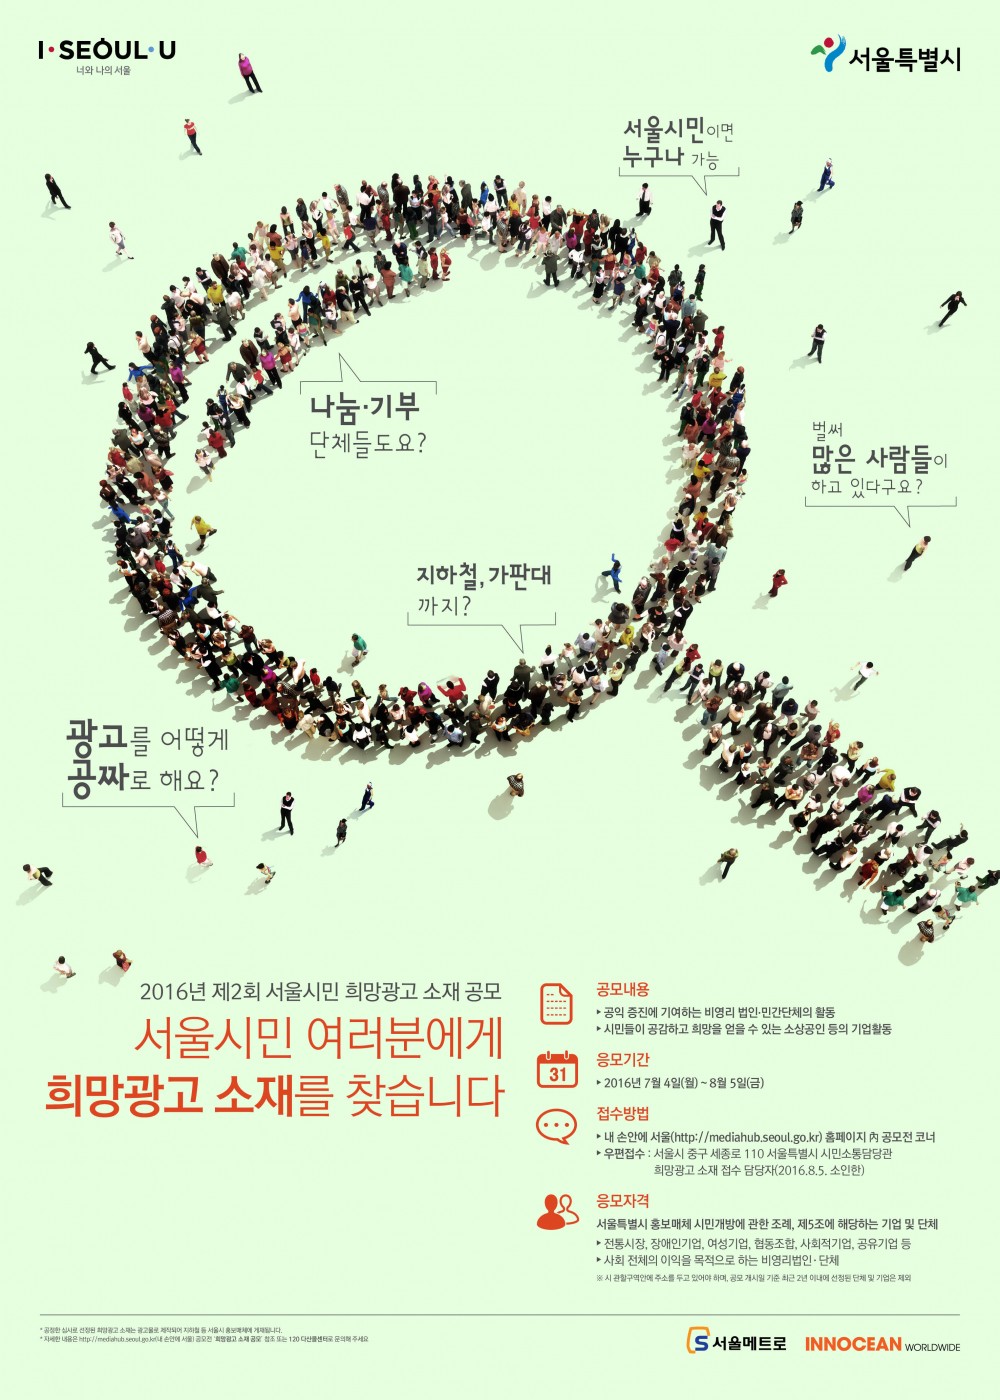 4. 2016년 제2회 희망광고 포스터